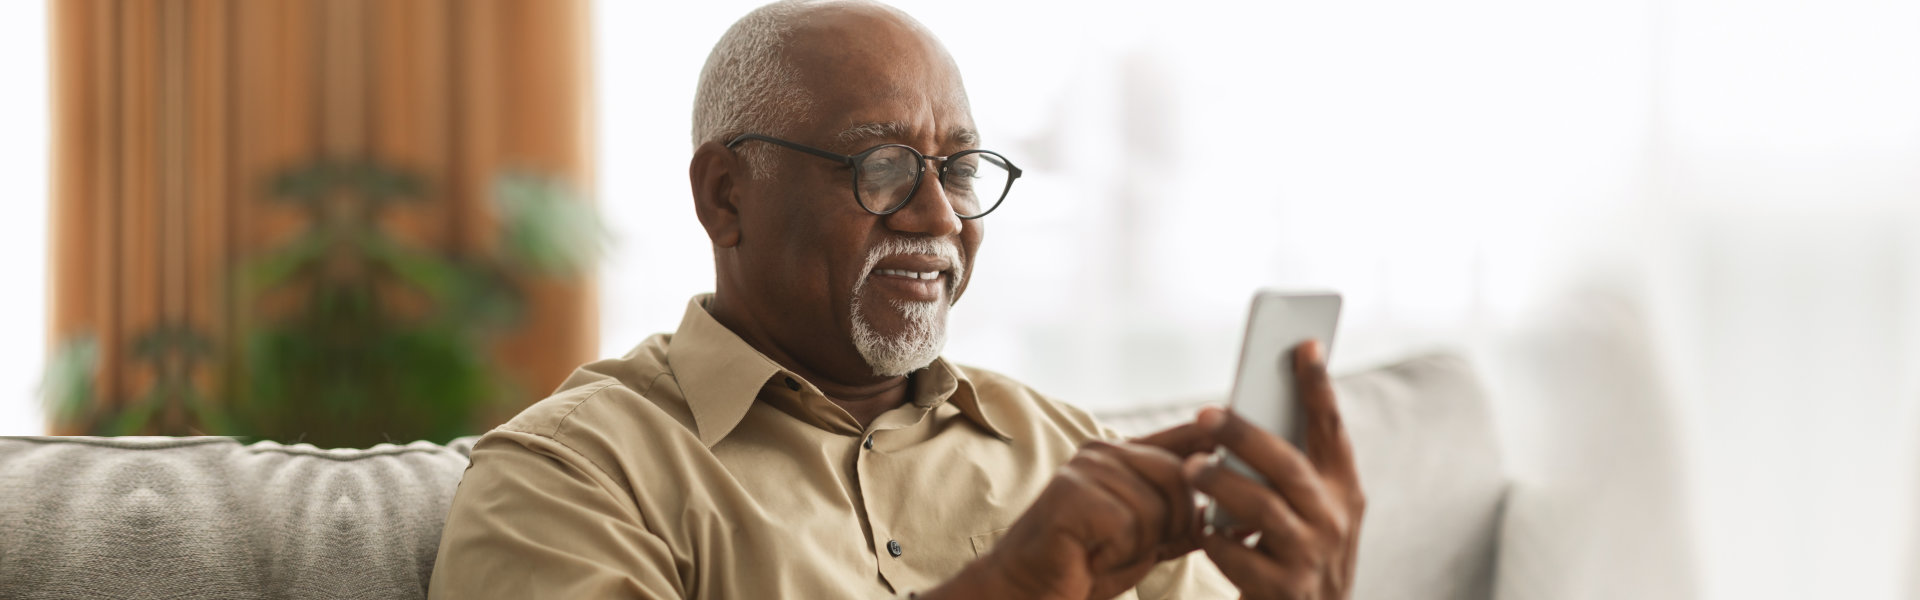 elderly man holding cellphone